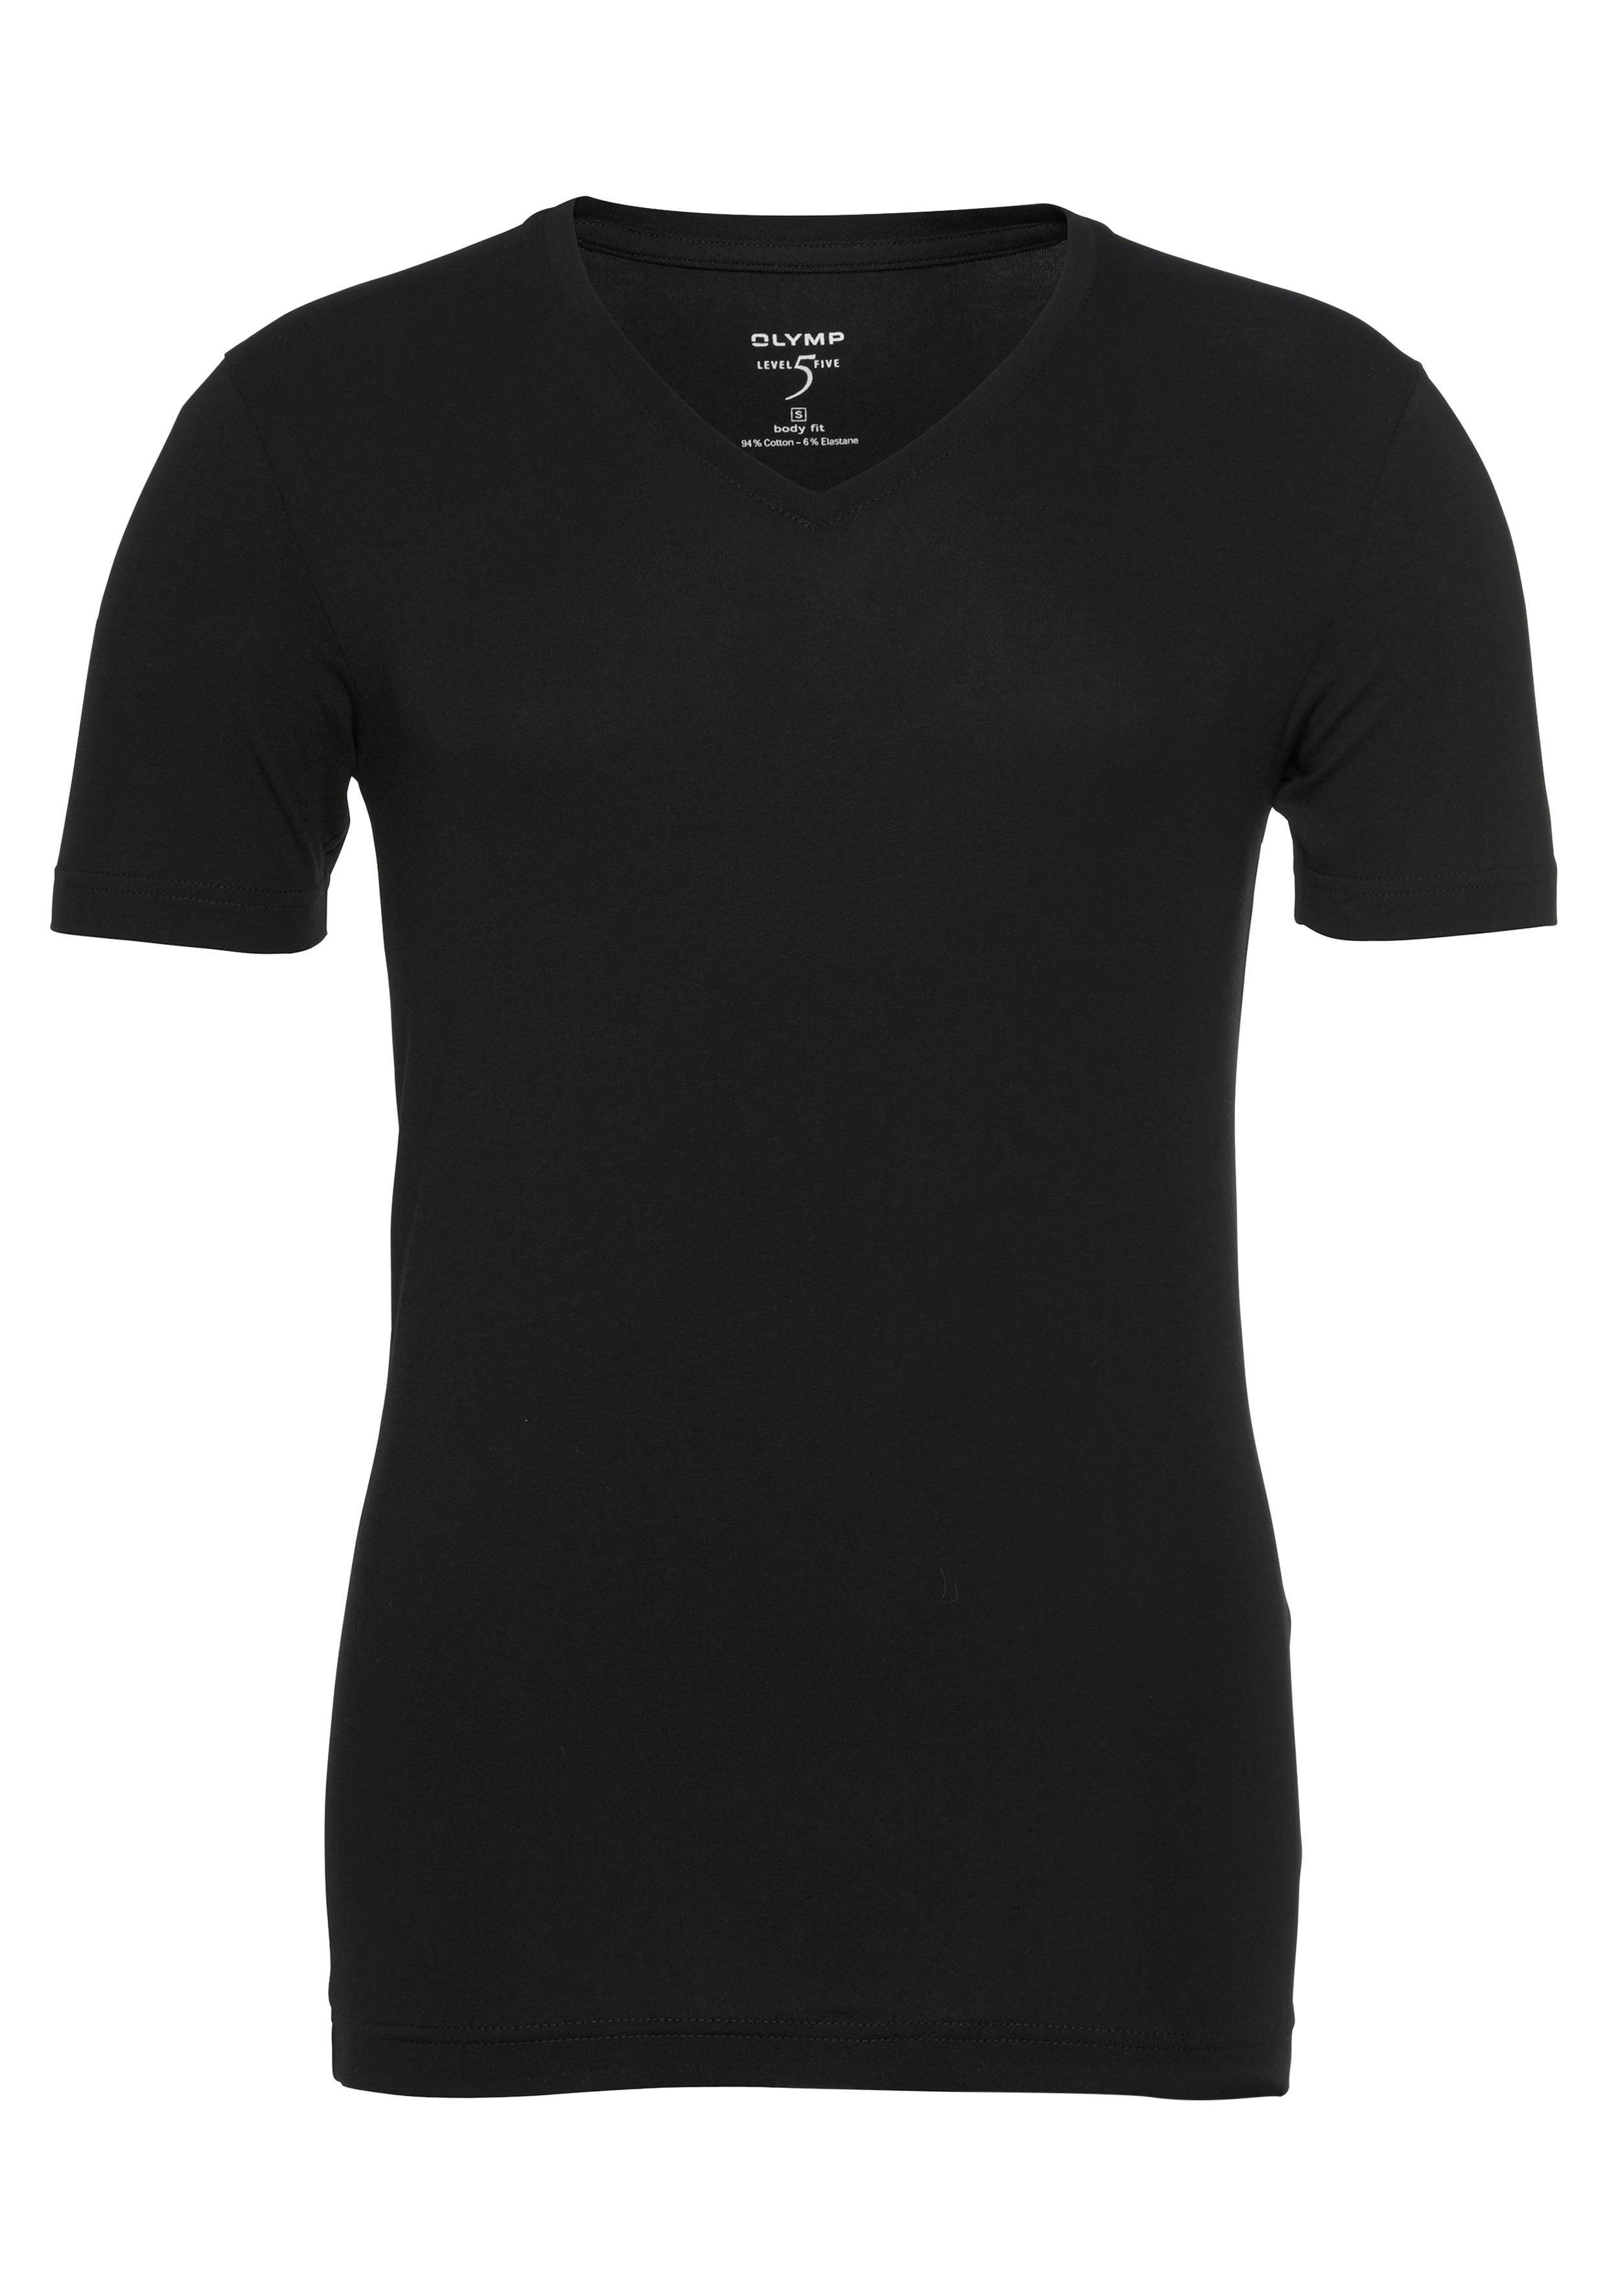 Unterziehen Level Ideal Five fit OLYMP zum V-Ausschnitt, T-Shirt schwarz body